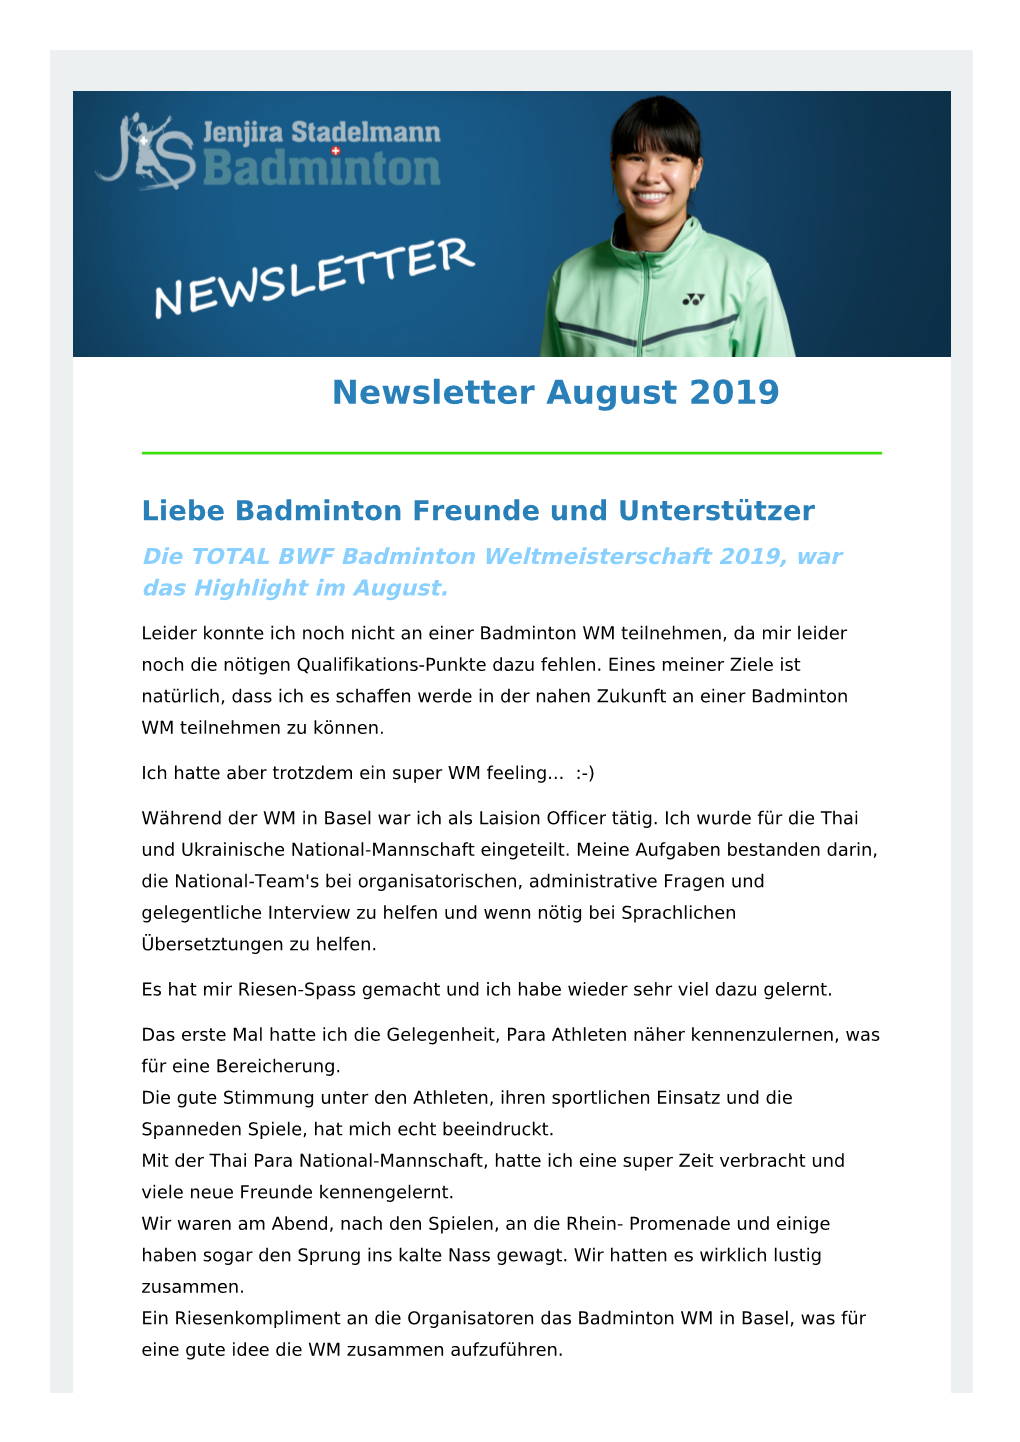 Newsletter August 2019 Liebe Badminton Freunde Und Unterstützer